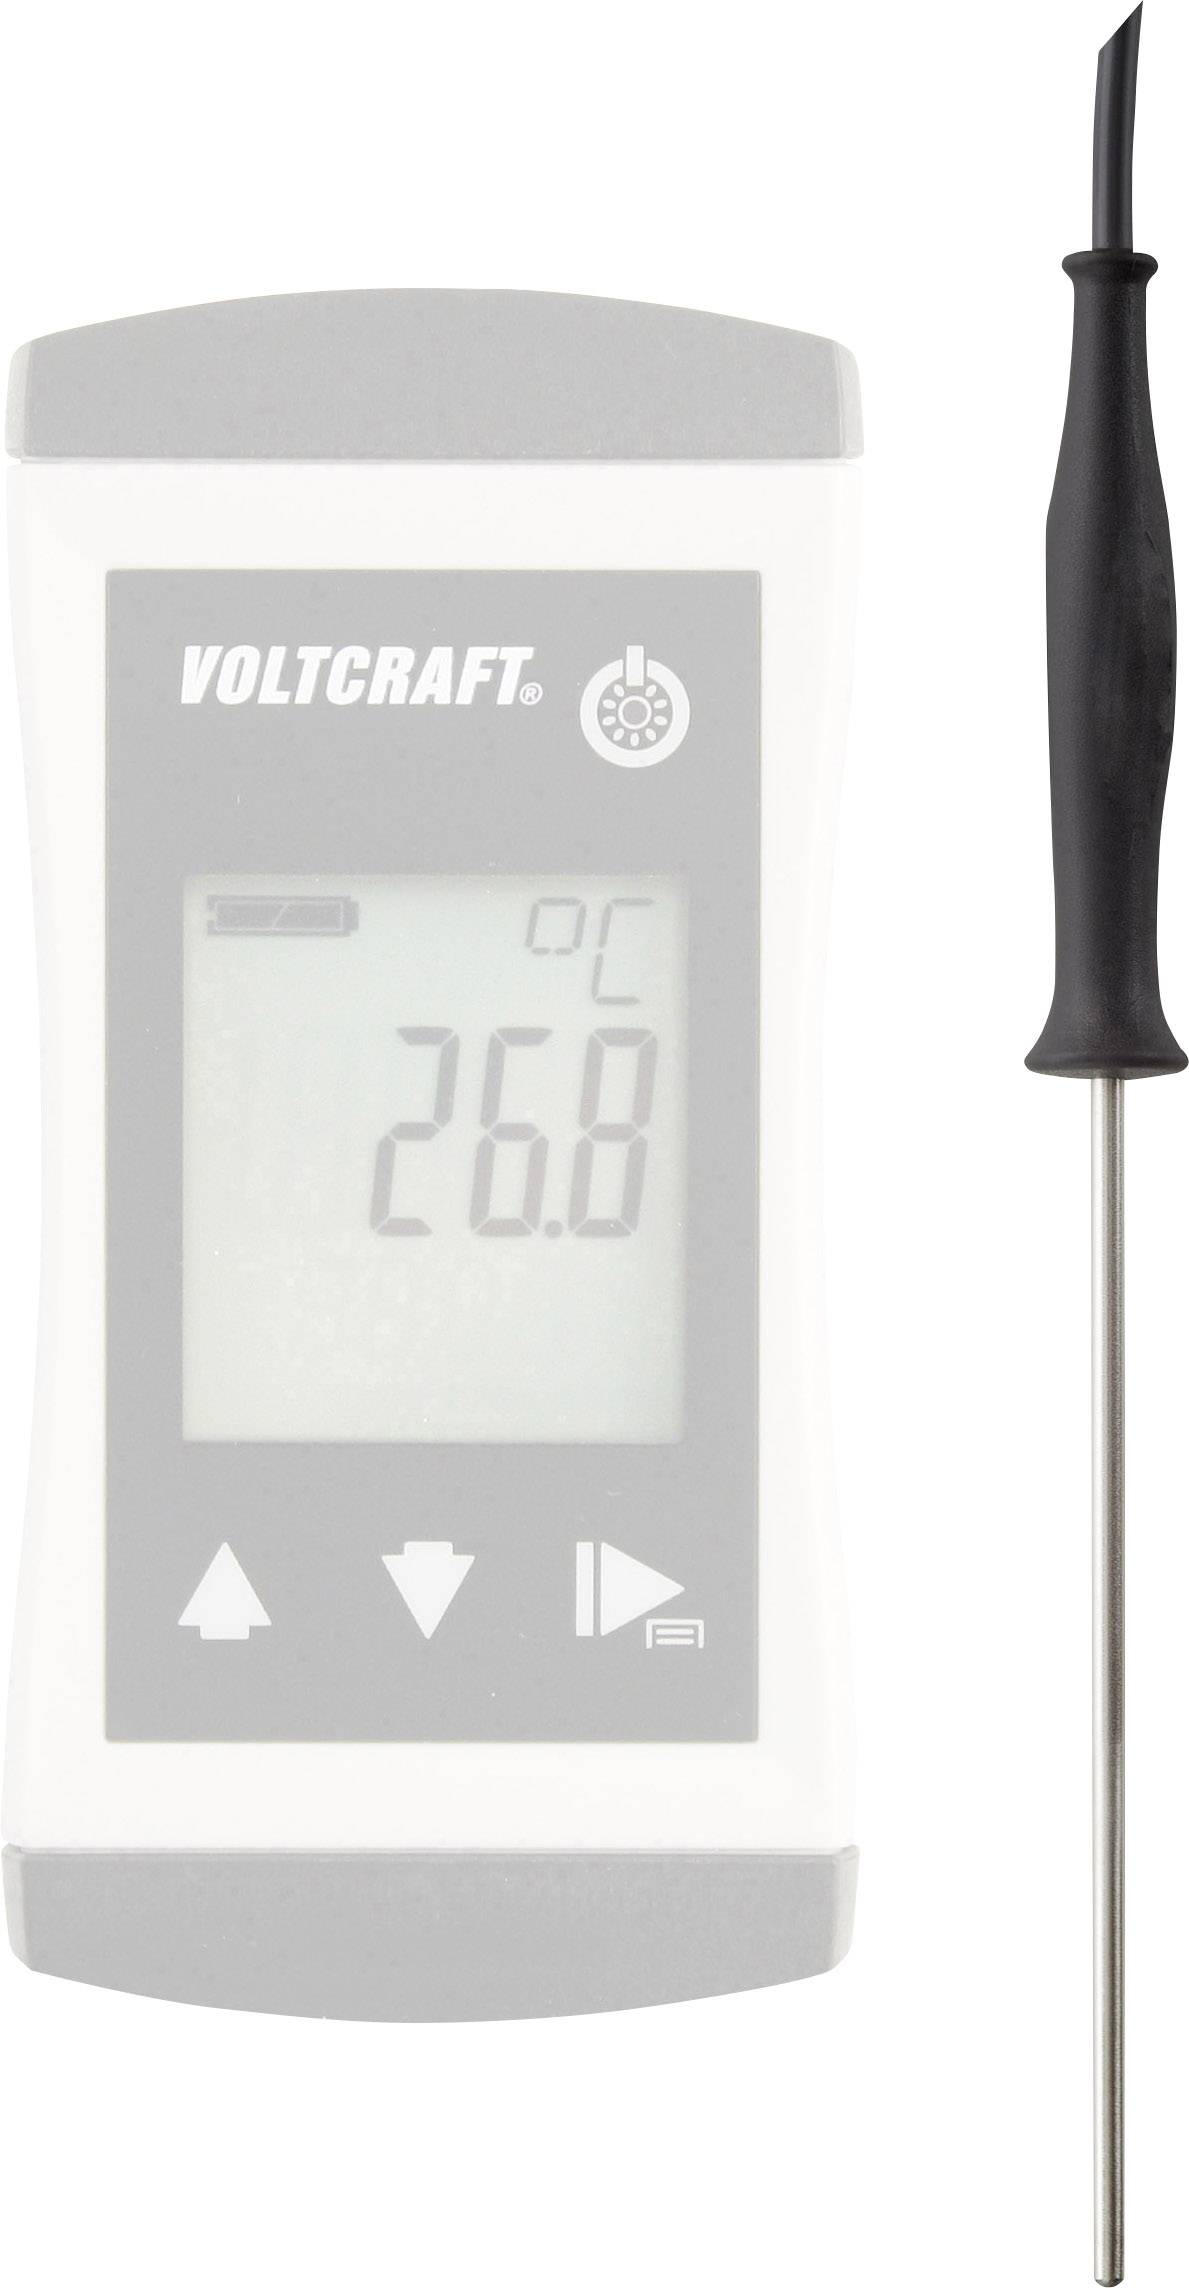 VOLTCRAFT TPT-200 Tauchfühler -70 bis 250 °C Fühler-Typ Pt1000